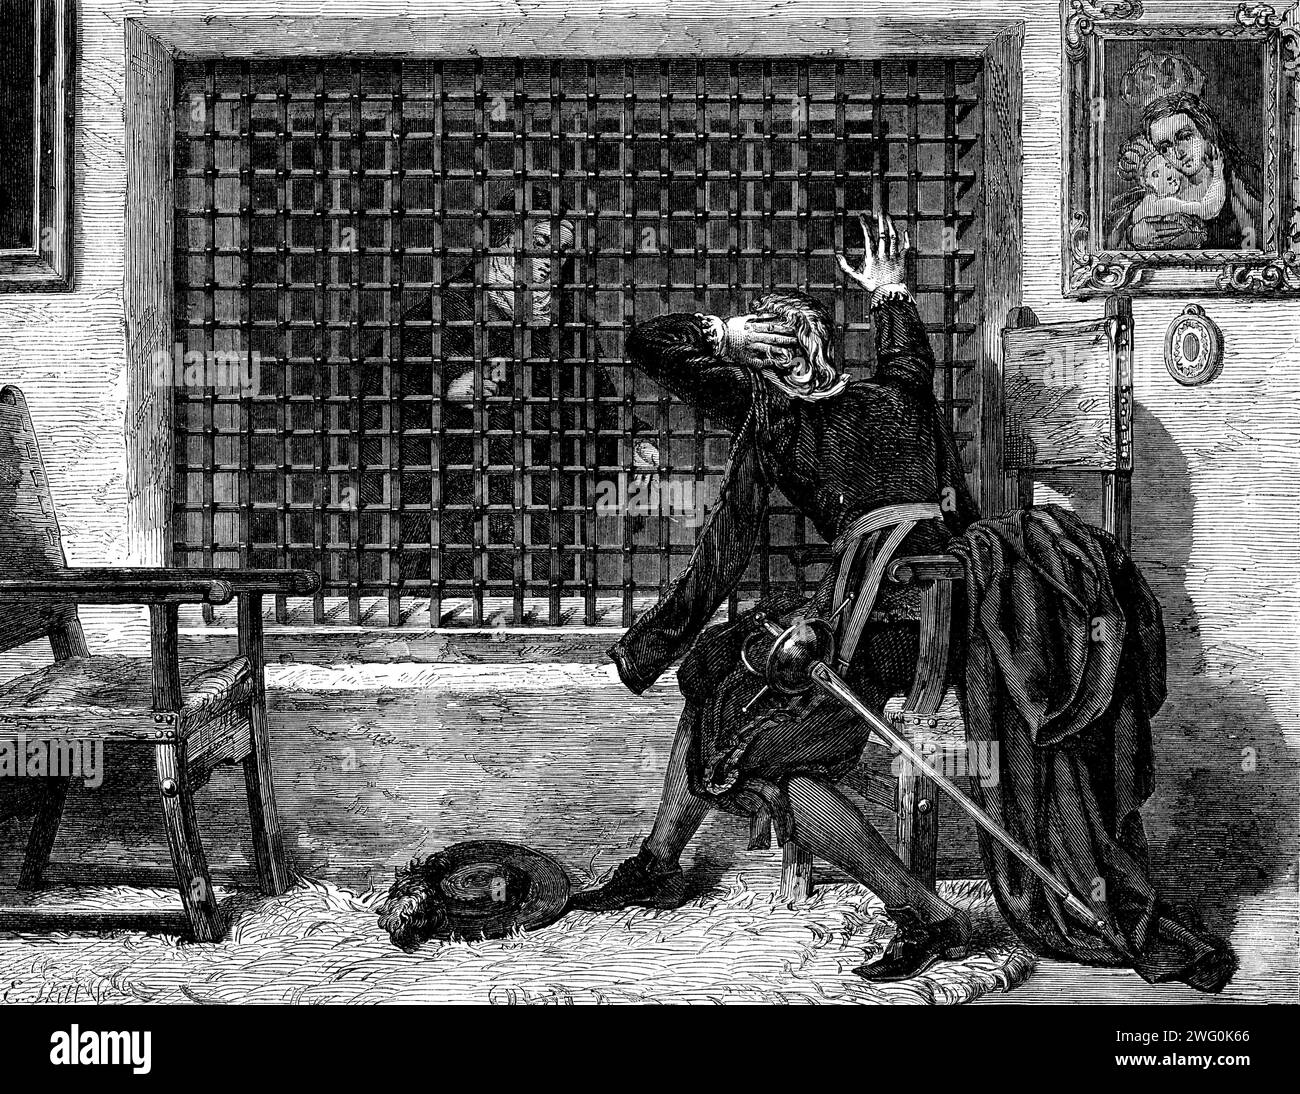 Die Internationale Ausstellung: "Abschied - für immer", von V. Manzano, 1862. Gravur eines Gemäldes. Ein junger Kavalierliebhaber wurde her...being von seiner Liebesdame abgetrennt, gezwungen, den Schleier zu nehmen und ein Kloster zu betreten. Elend und untröstlich, zieht er sich in tiefste Trauer und geht zum Kloster, um einen Blick auf den geliebten Menschen zu erhaschen... Er sits...before das doppelte Eisengitter des Käfigs, das ewige Gefängnis seiner verlorenen Liebe... hier kommt sie lange... aber ohne Worte der Hoffnung oder des Trostes, nur die gefürchteten "Adios per siempre". Der arme abgelenkte Kerl in va Stockfoto